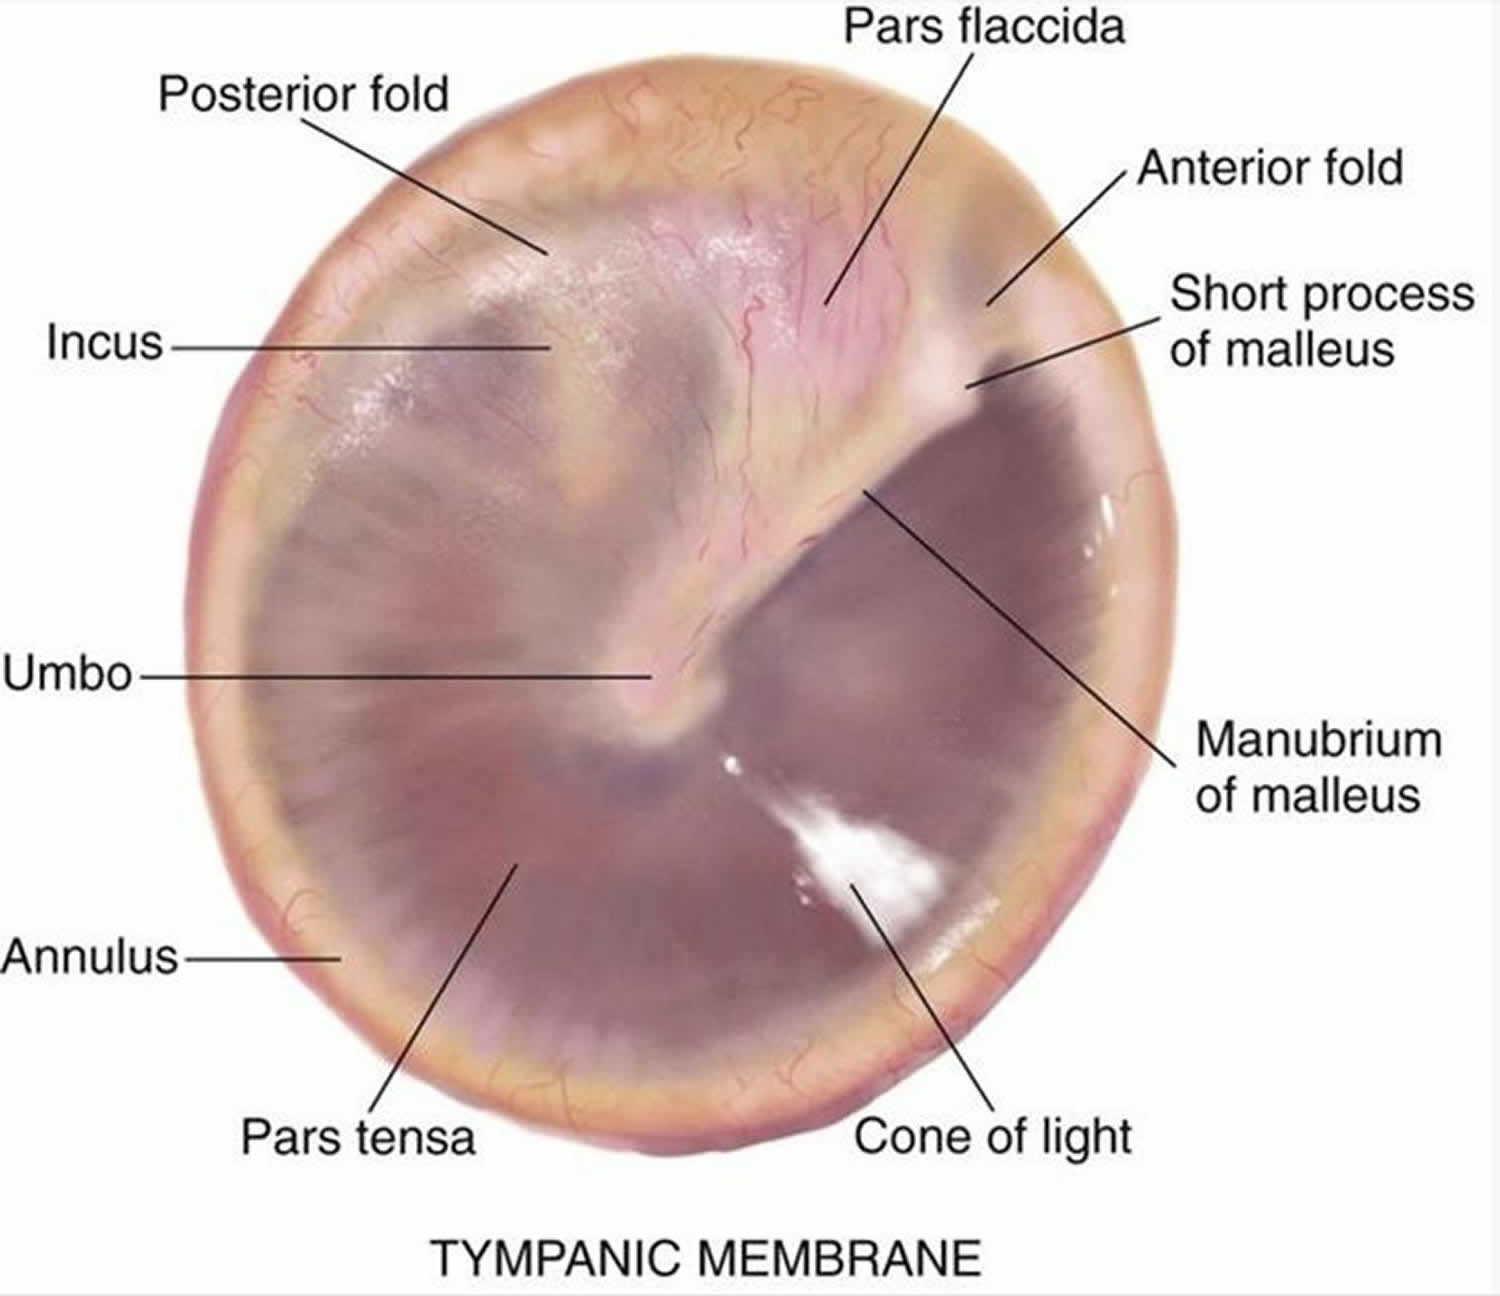 Tympanic membrane anatomy